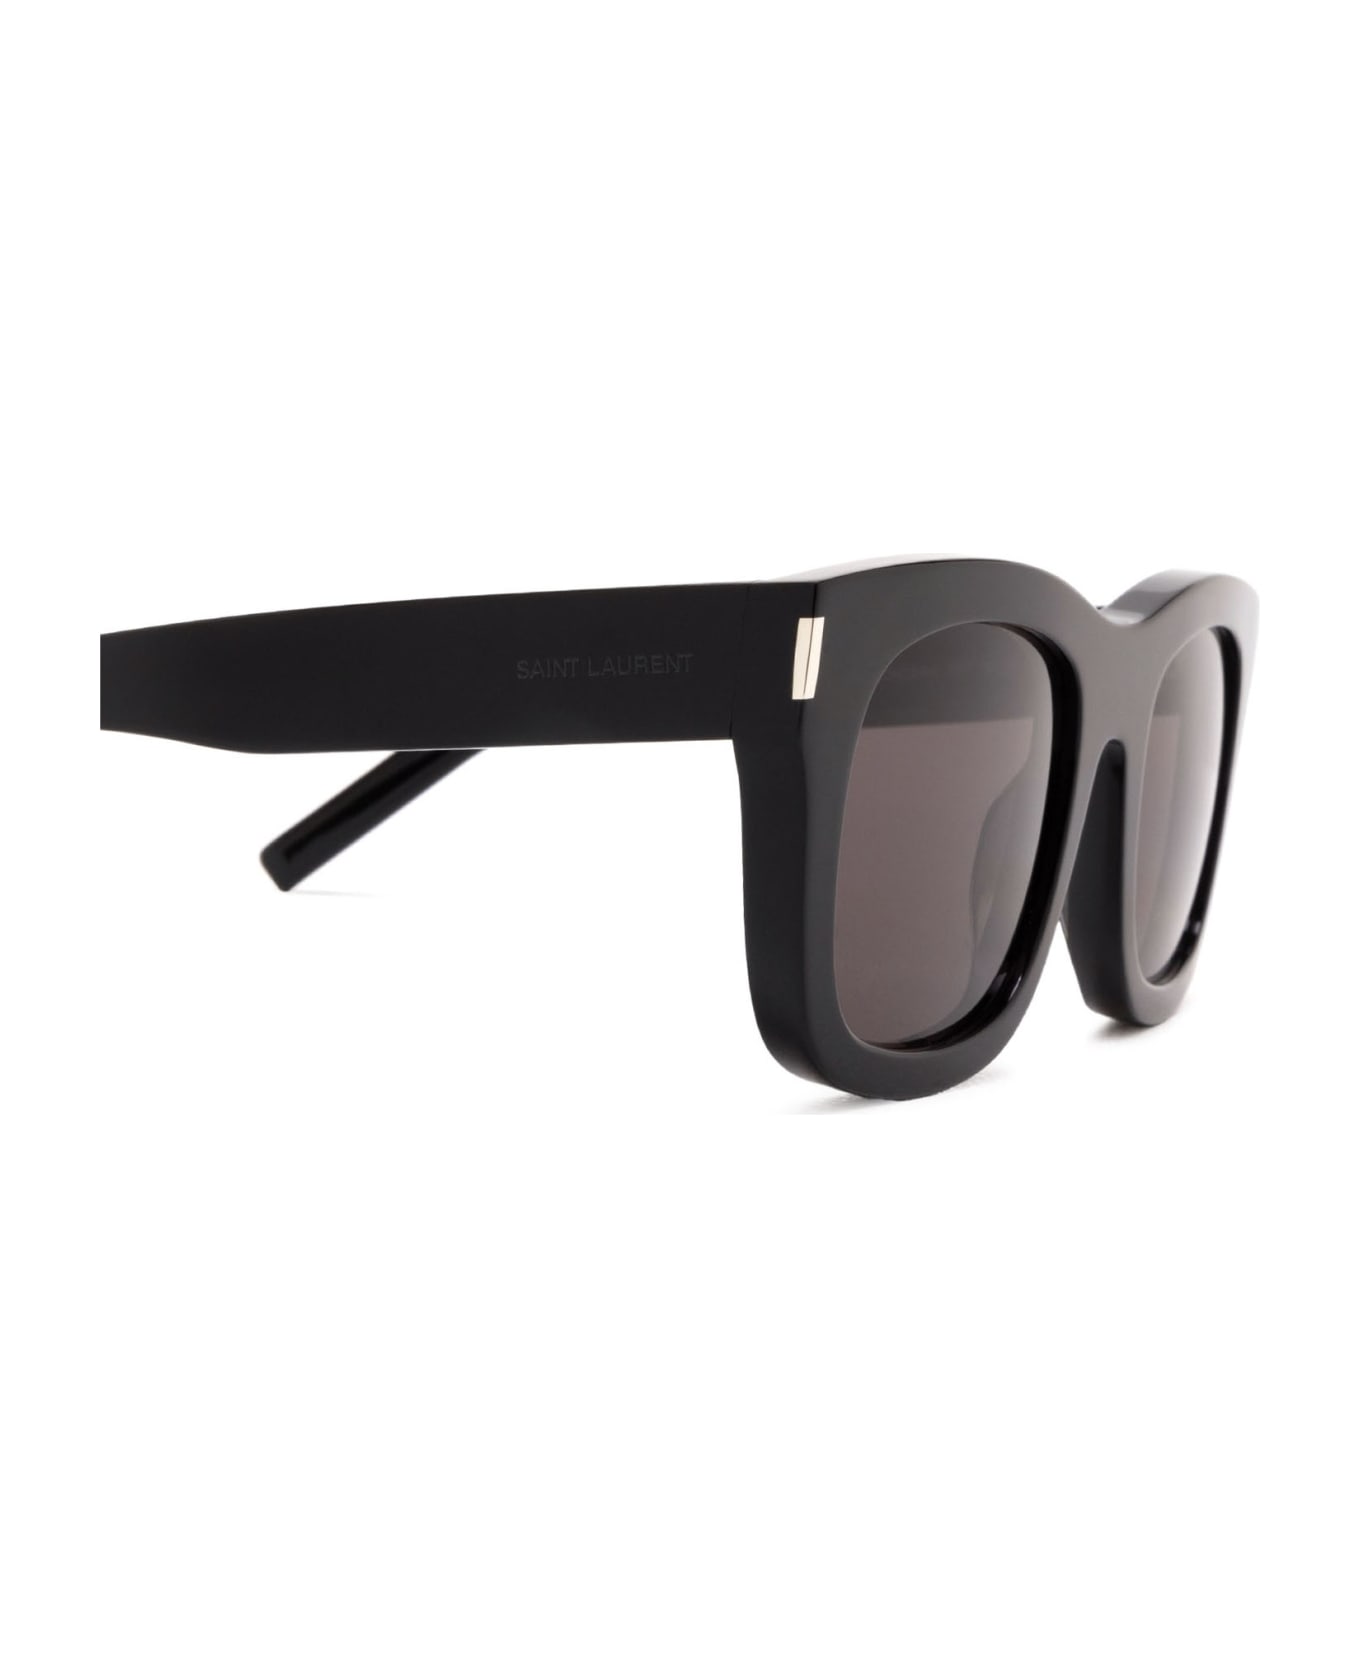 Saint Laurent Eyewear Sl 650 Black Sunglasses - Black